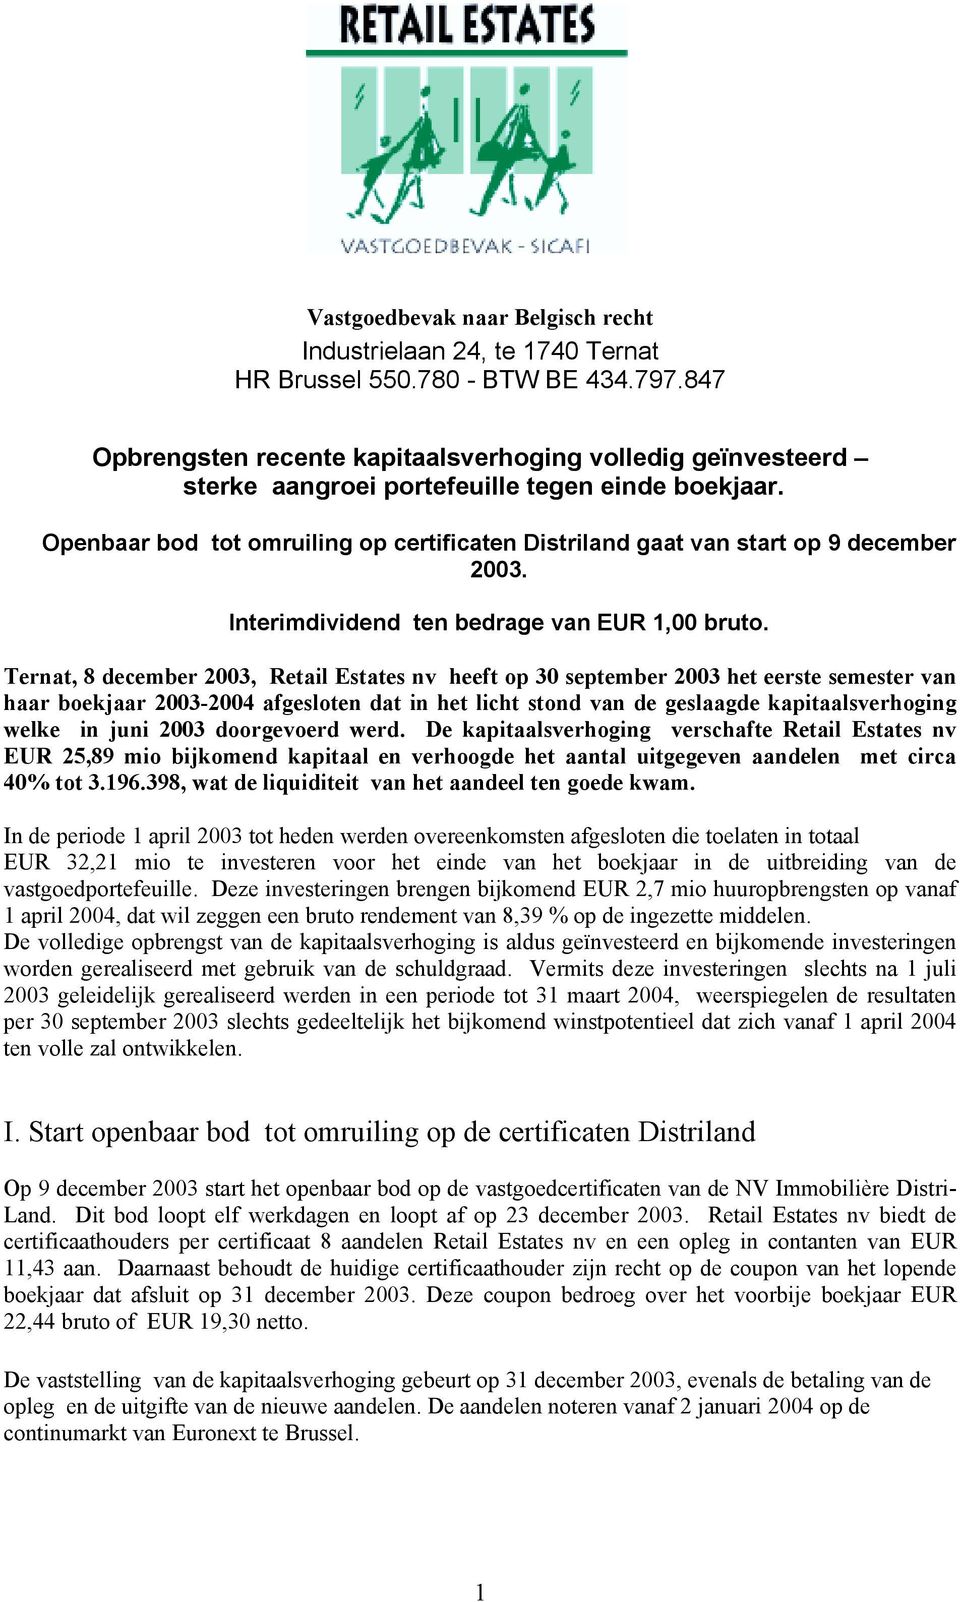 Openbaar bod tot omruiling op certificaten Distriland gaat van start op 9 december 2003. Interimdividend ten bedrage van EUR 1,00 bruto.